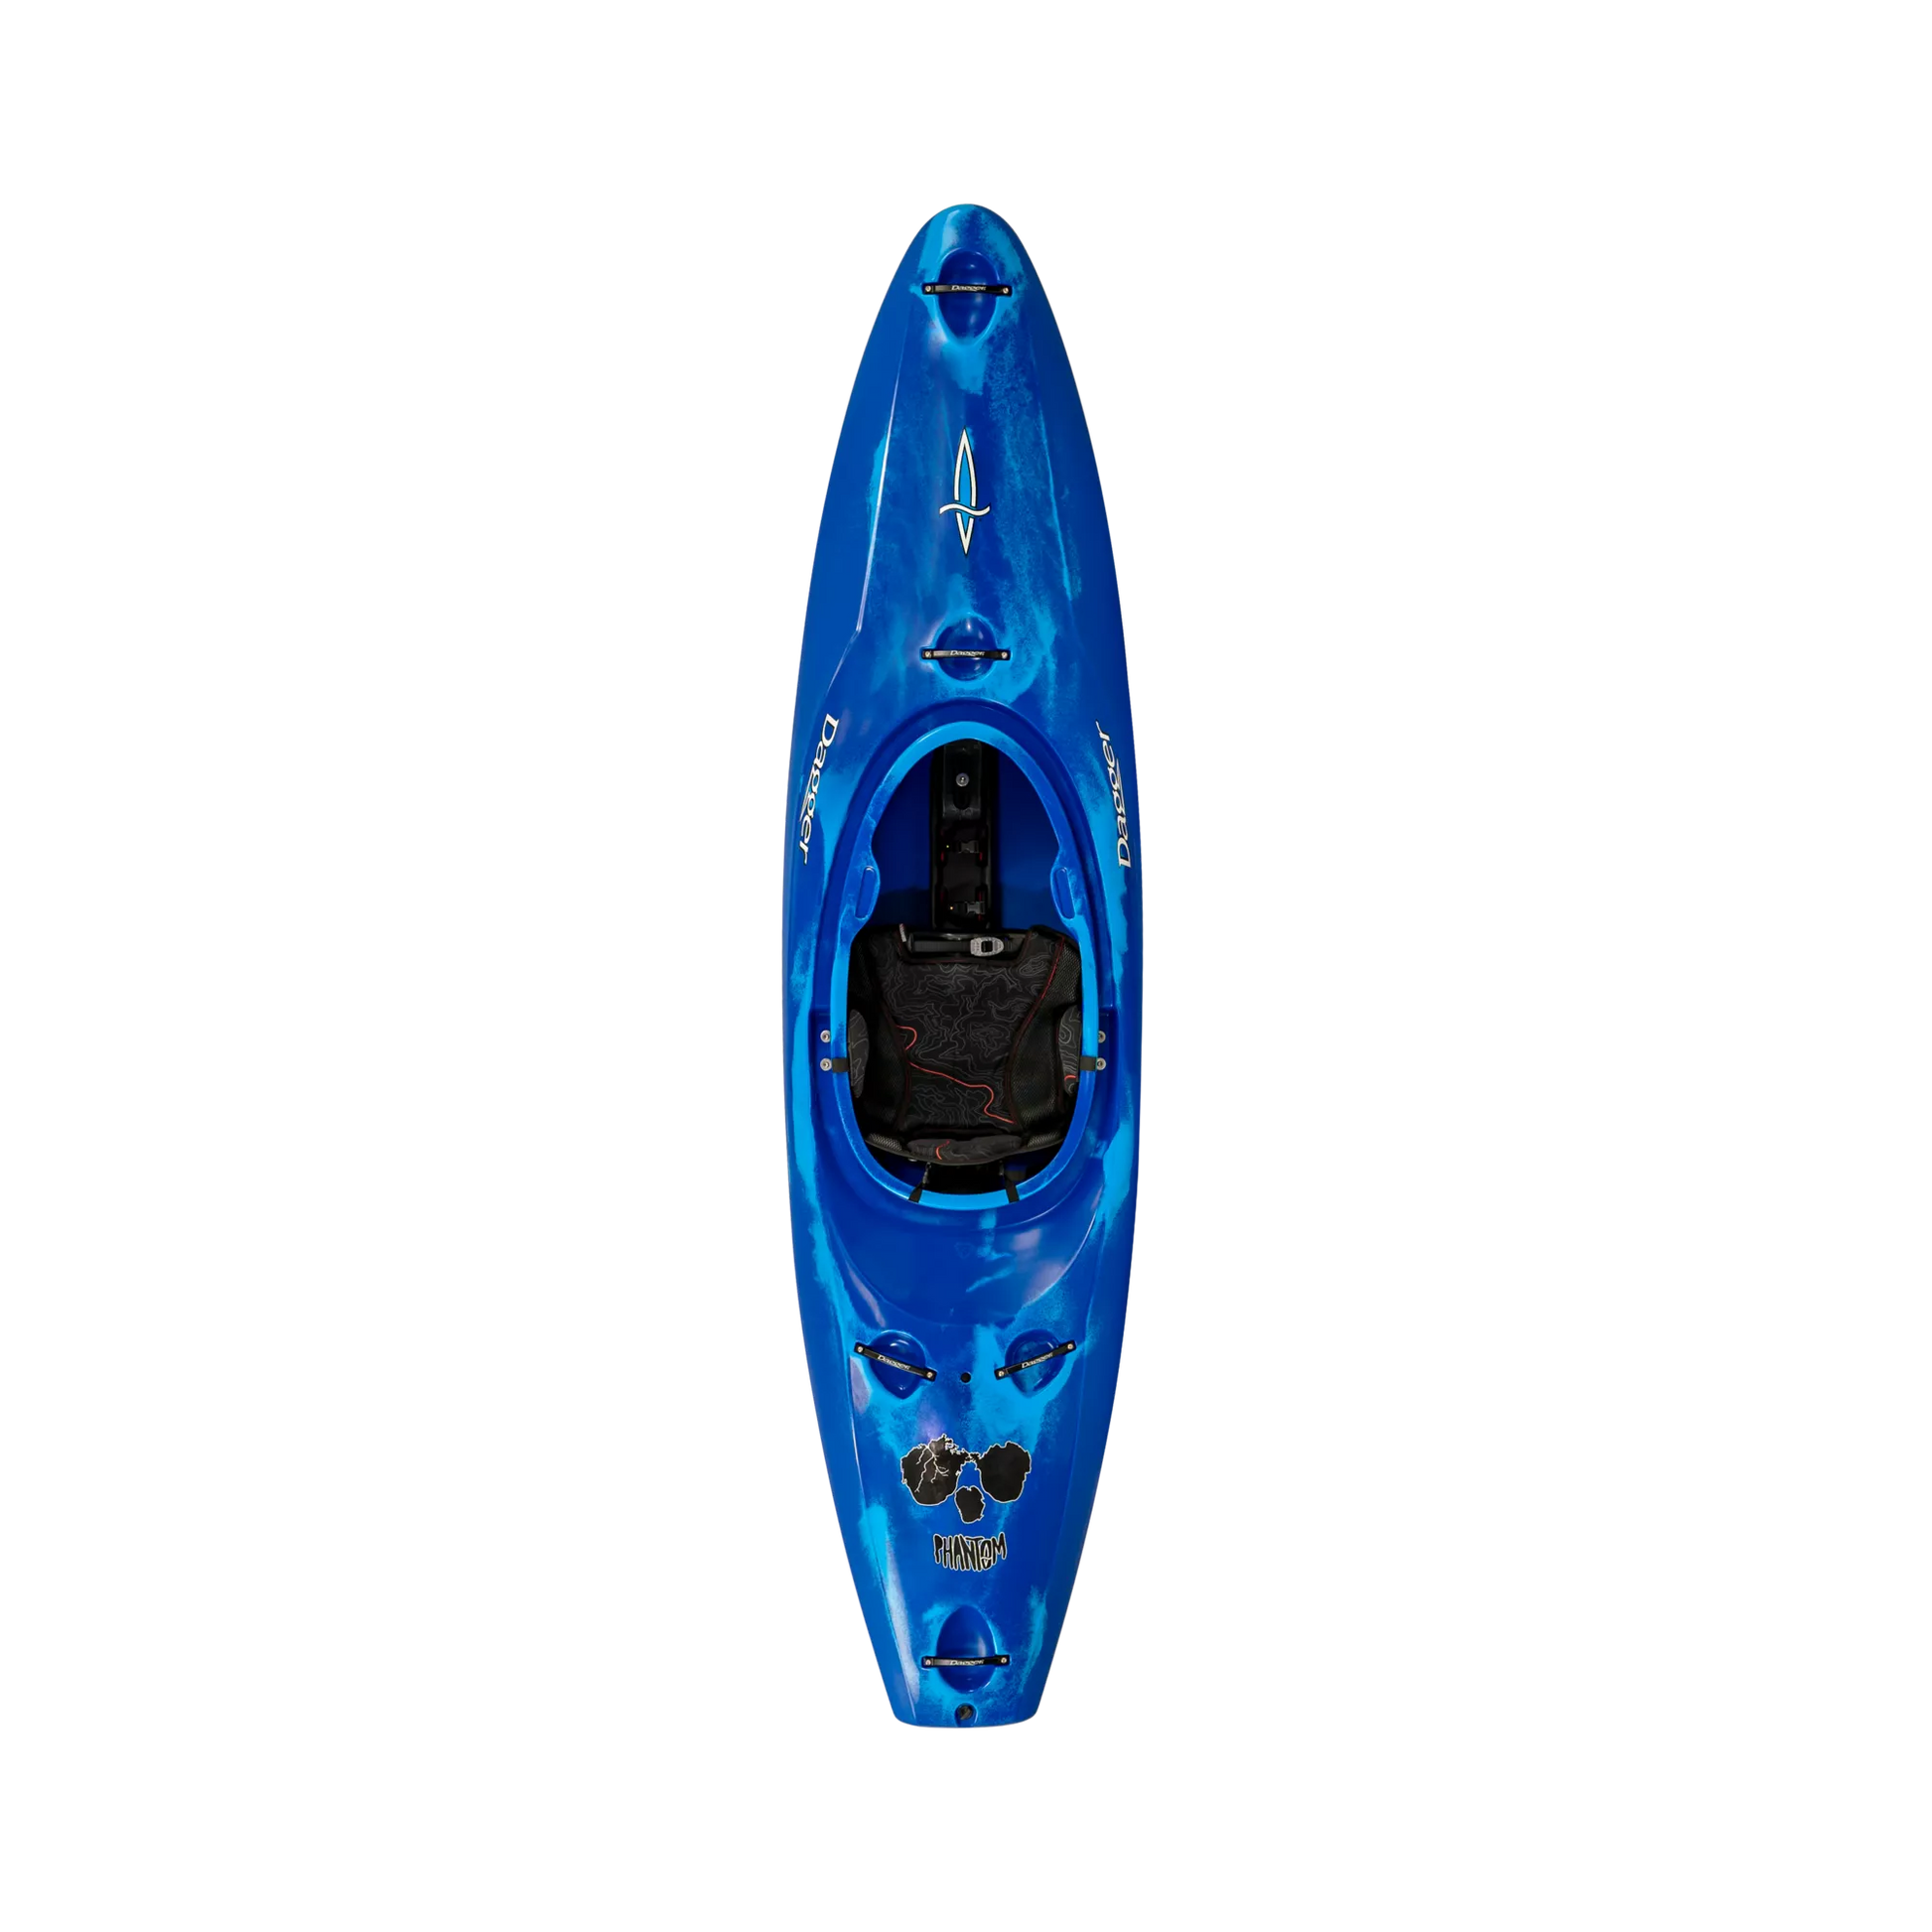 Blue Smoke Dagger Phantom creek/whitewater race kayak.